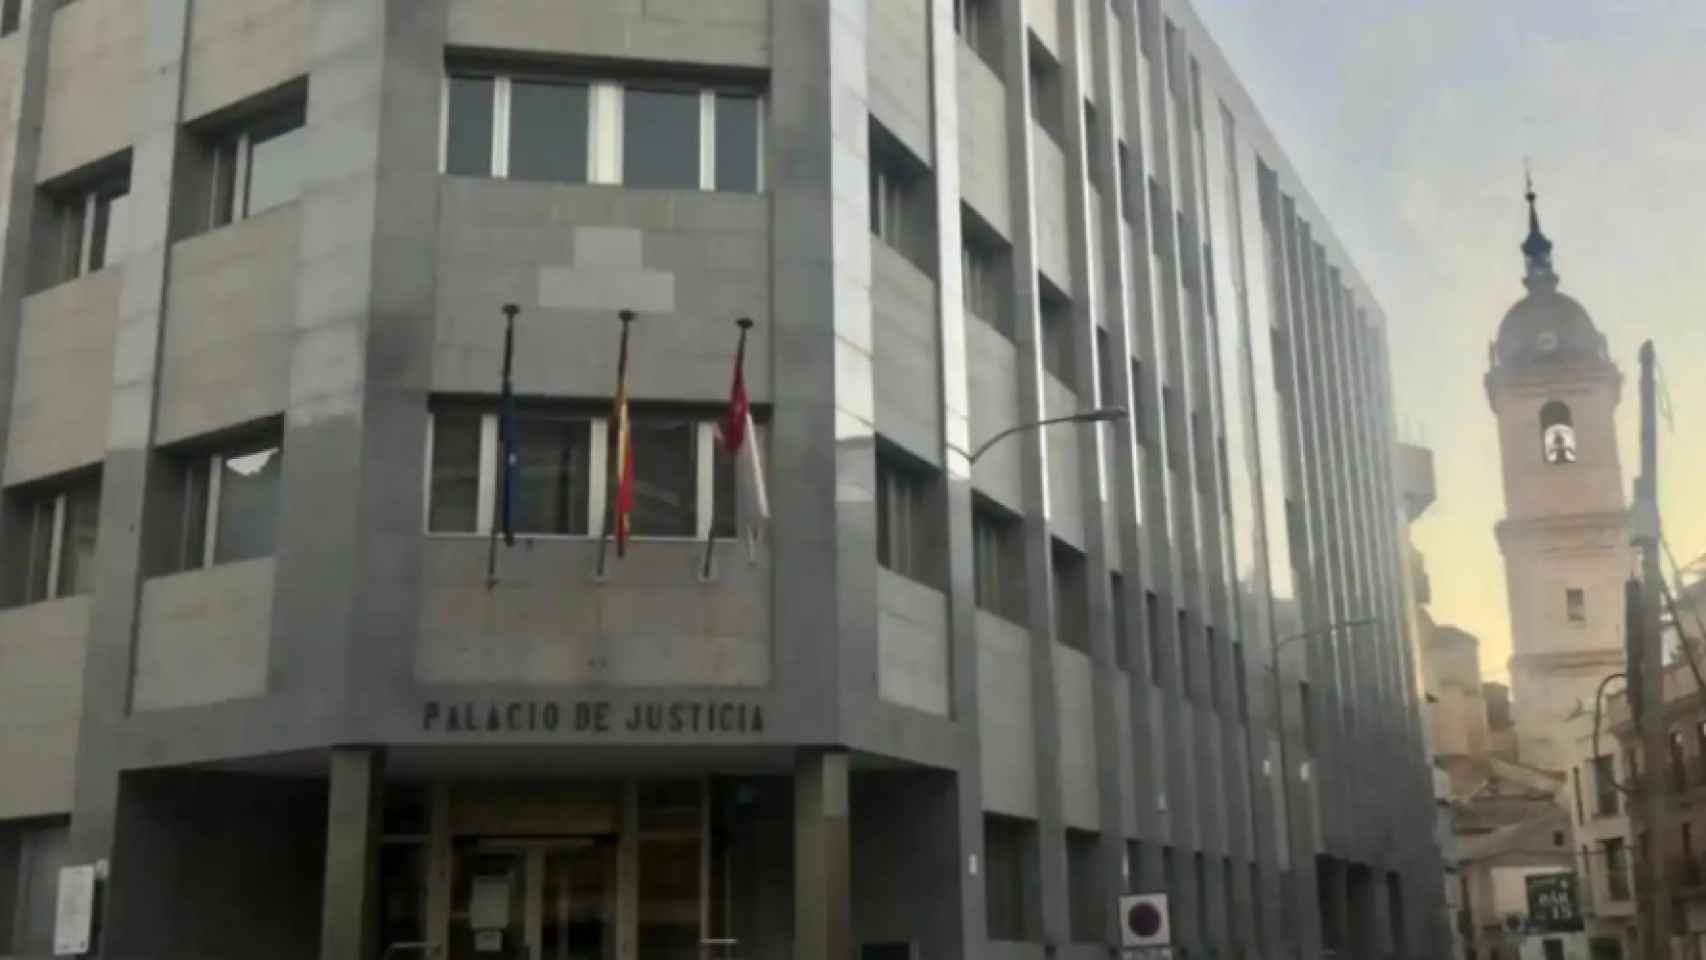 Palacio de Justicia de Ciudad Real.